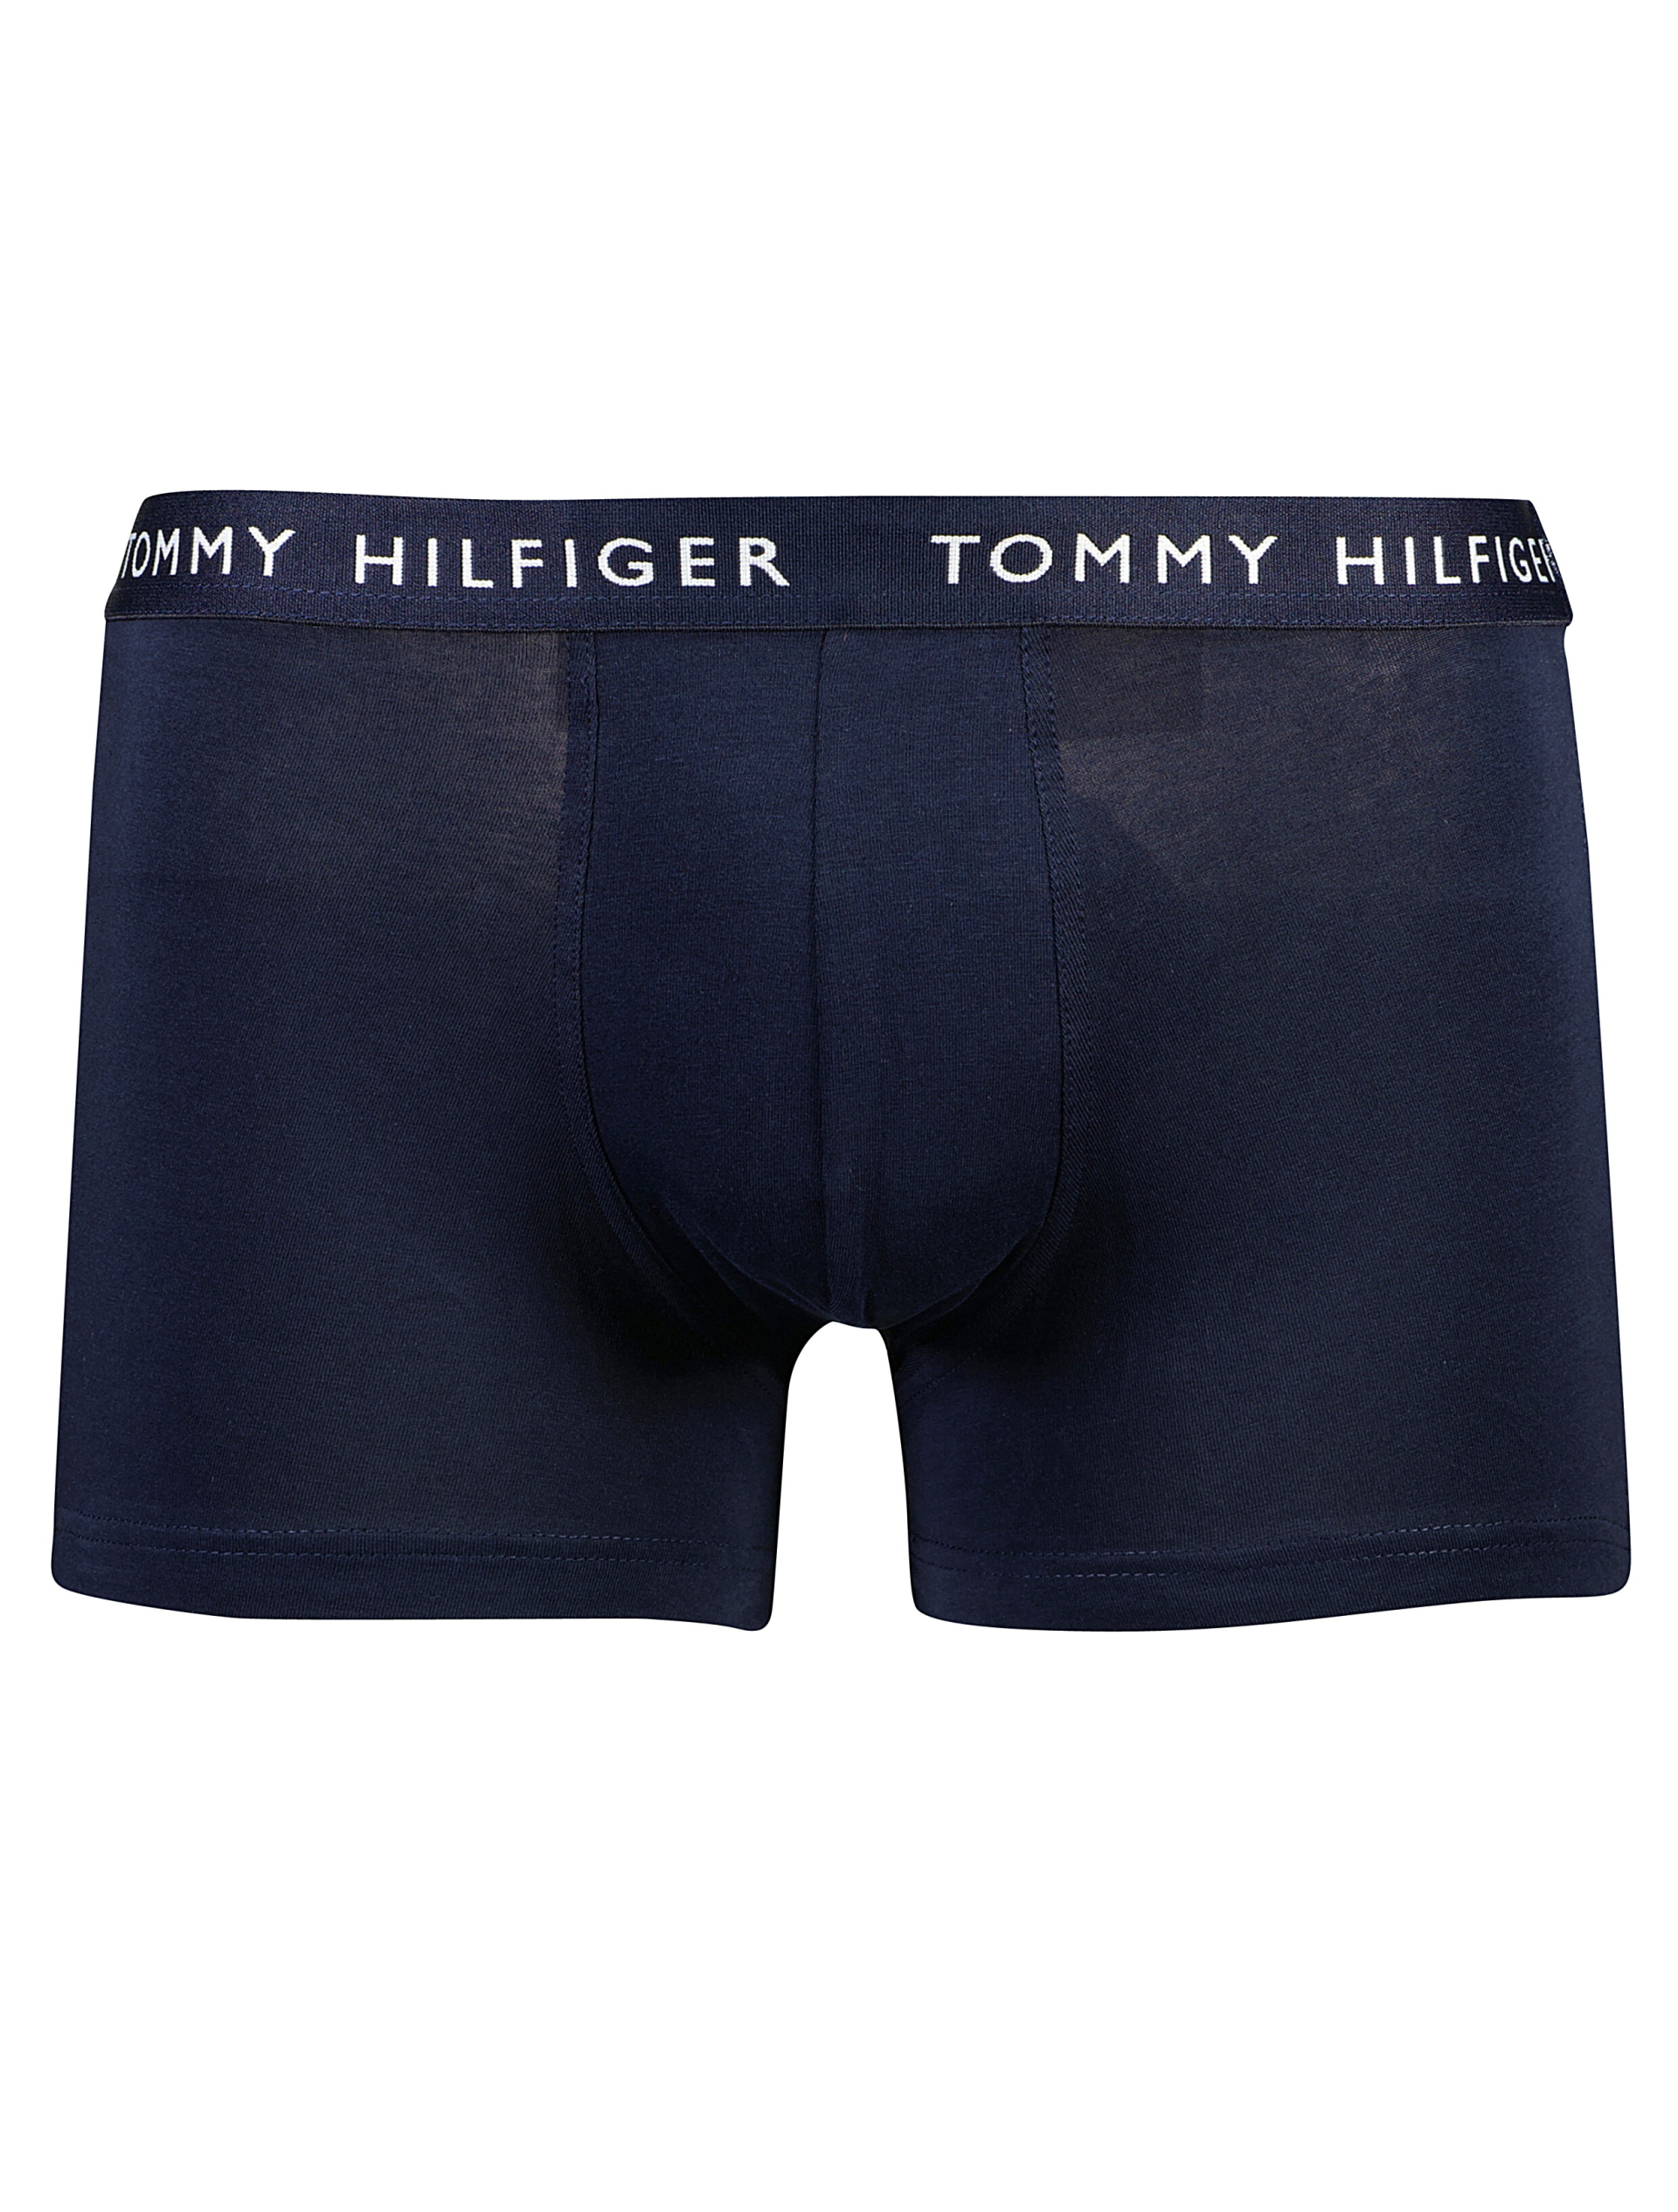 Tommy Hilfiger Tights multi / 0v2 multi